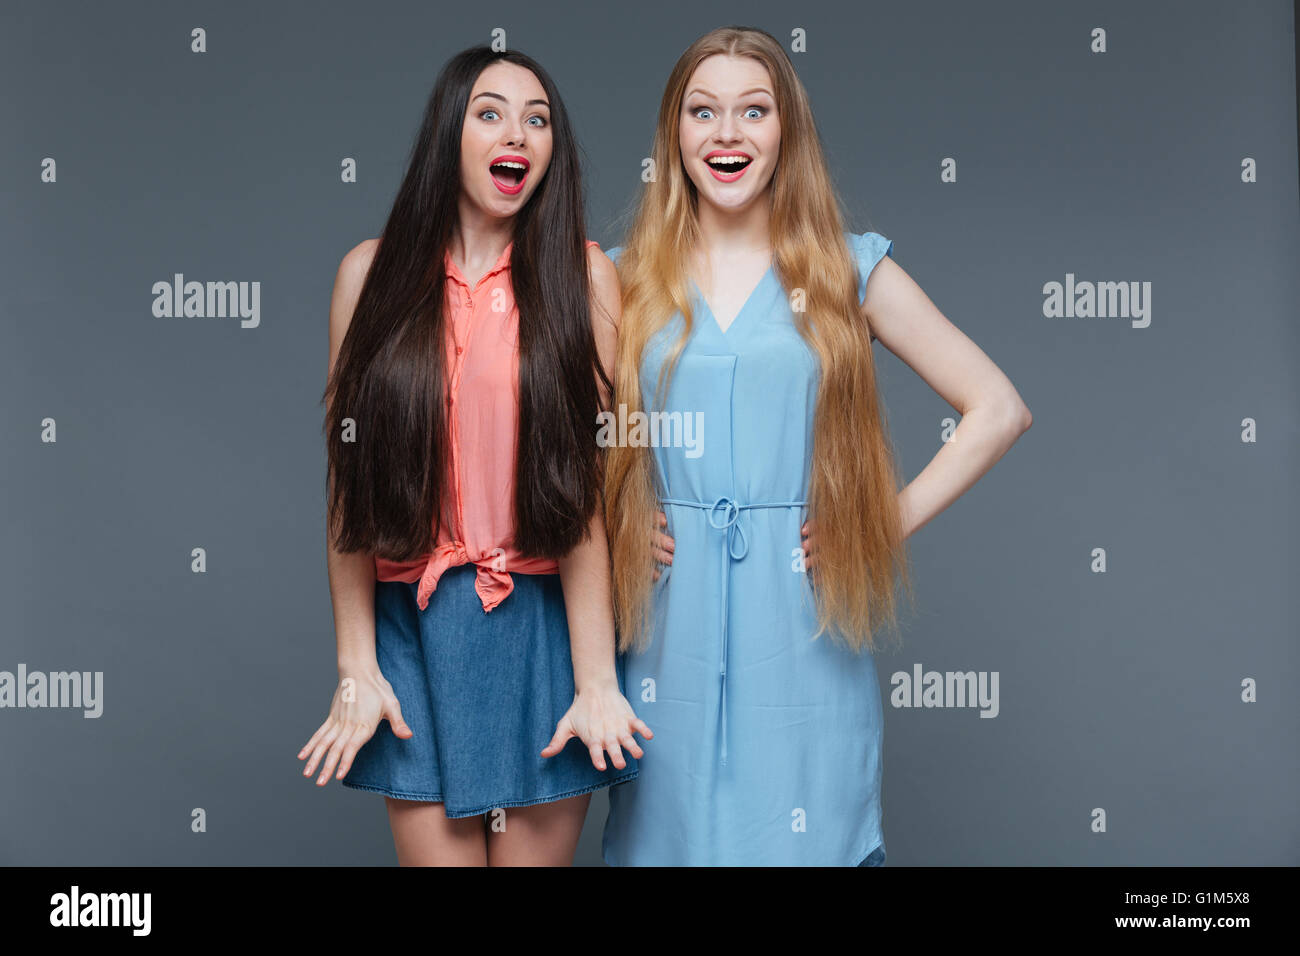 Zwei glückliche überraschte junge Frauen mit langen Haaren stehen mit Mund öffnete sich über grauen Hintergrund Stockfoto